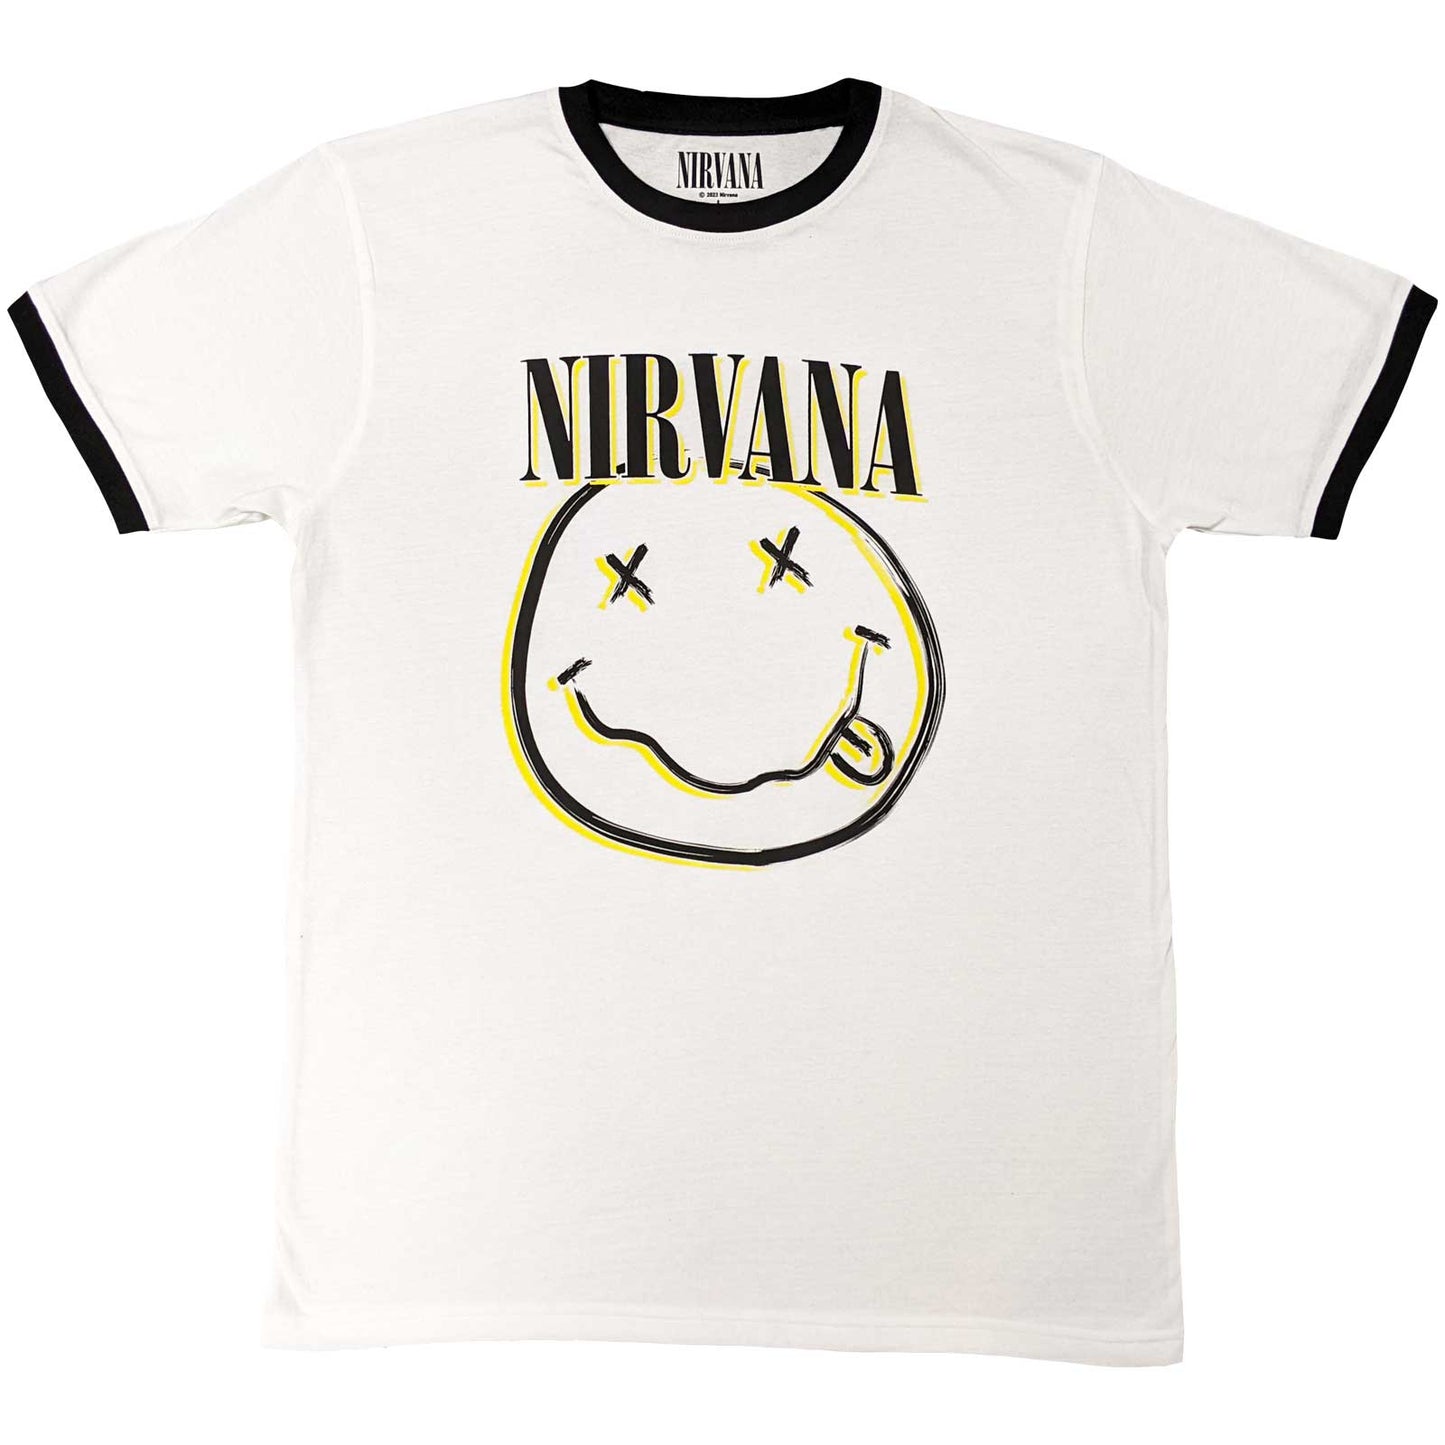 Nirvana Ringer T-Shirt Double Happy Face - Ireland Vinyl